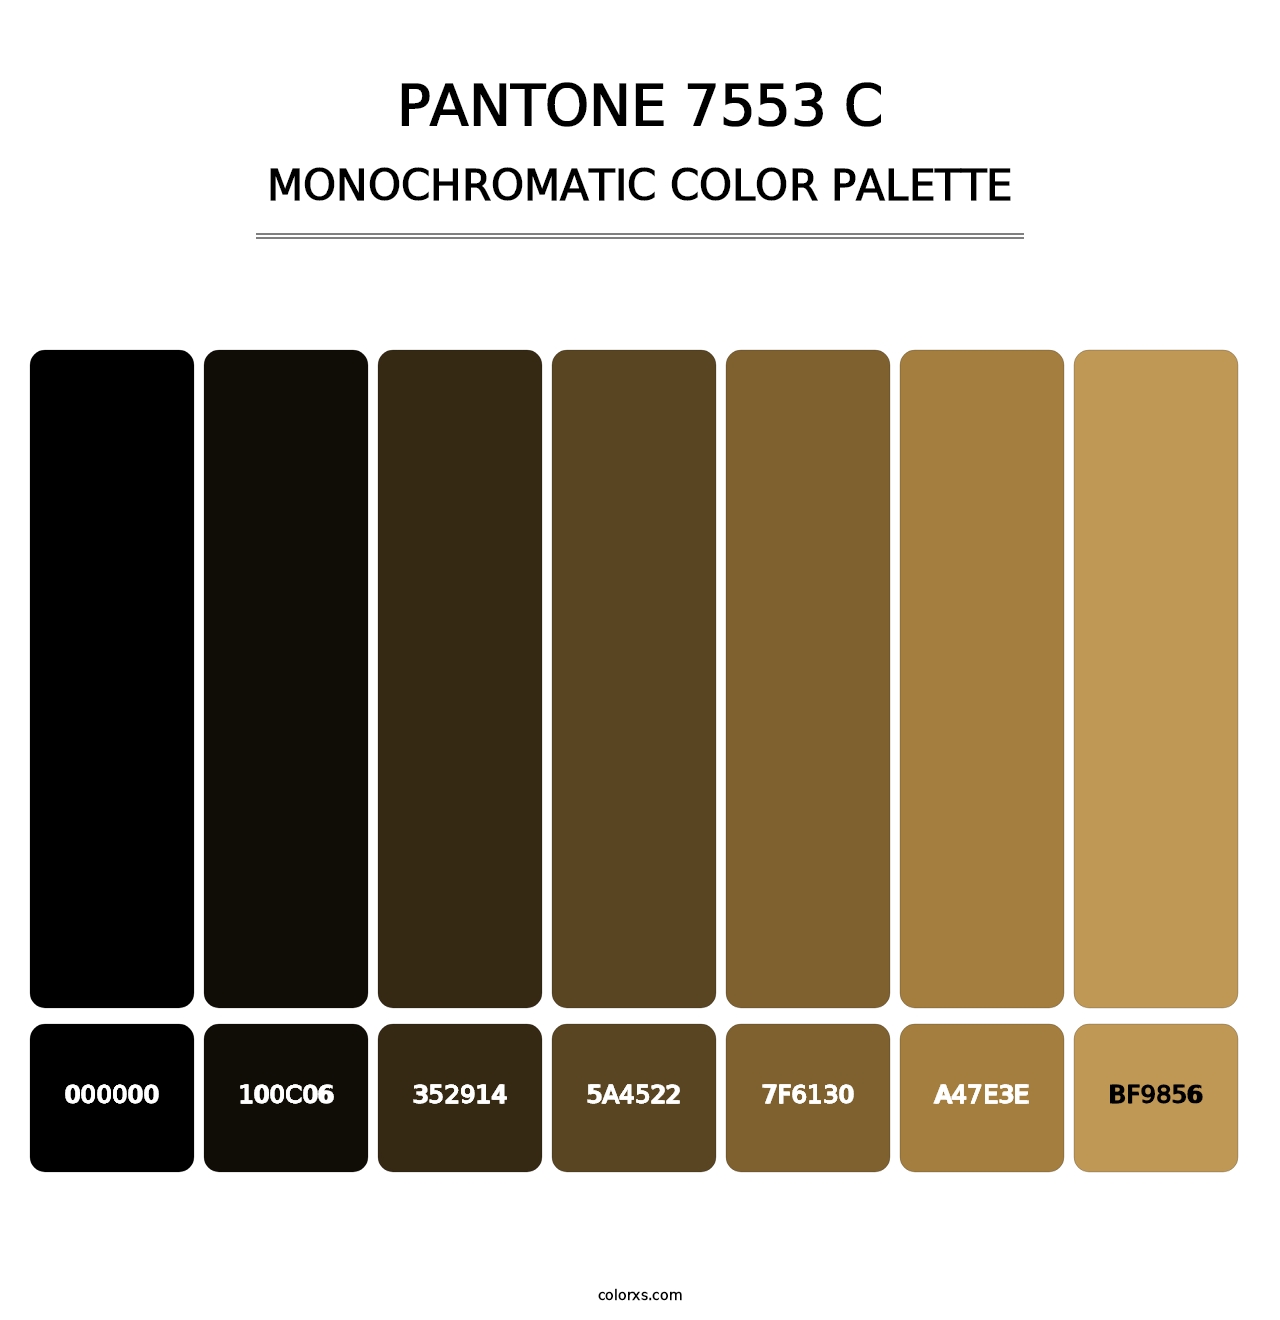 PANTONE 7553 C - Monochromatic Color Palette